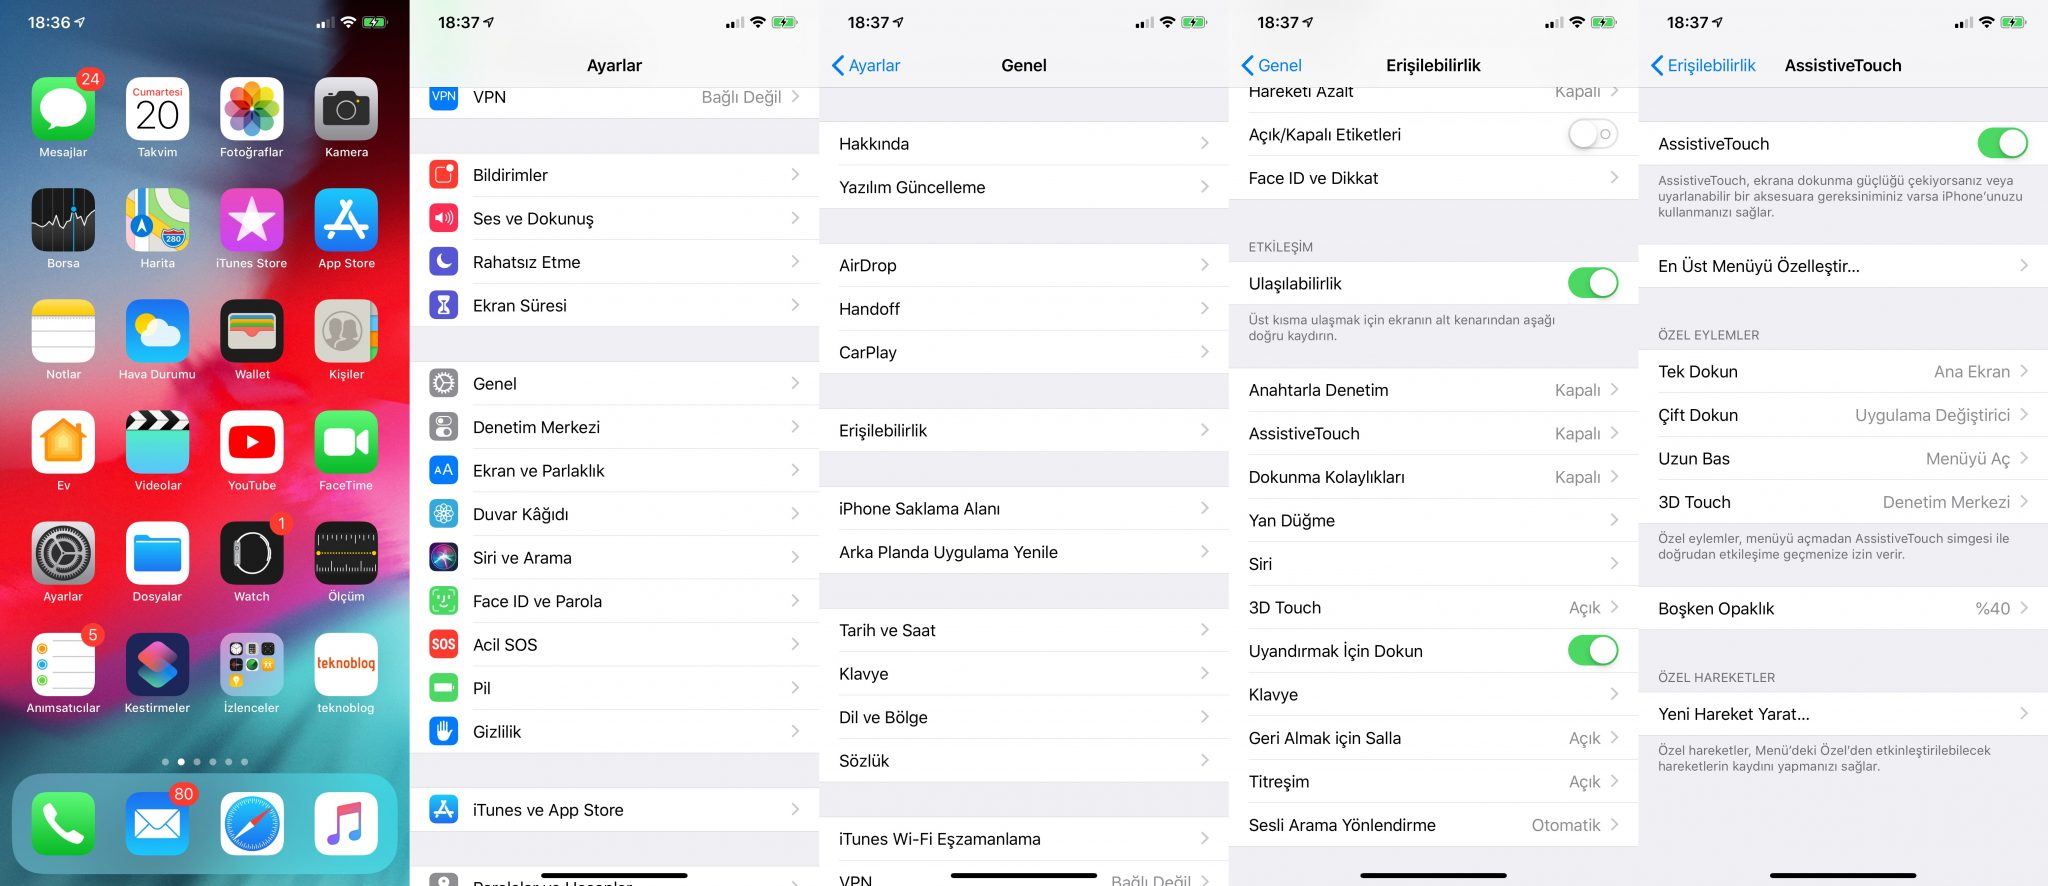 iPhone Xs ve iPhone Xs Max için yararlı ipuçları ve tavsiyeler